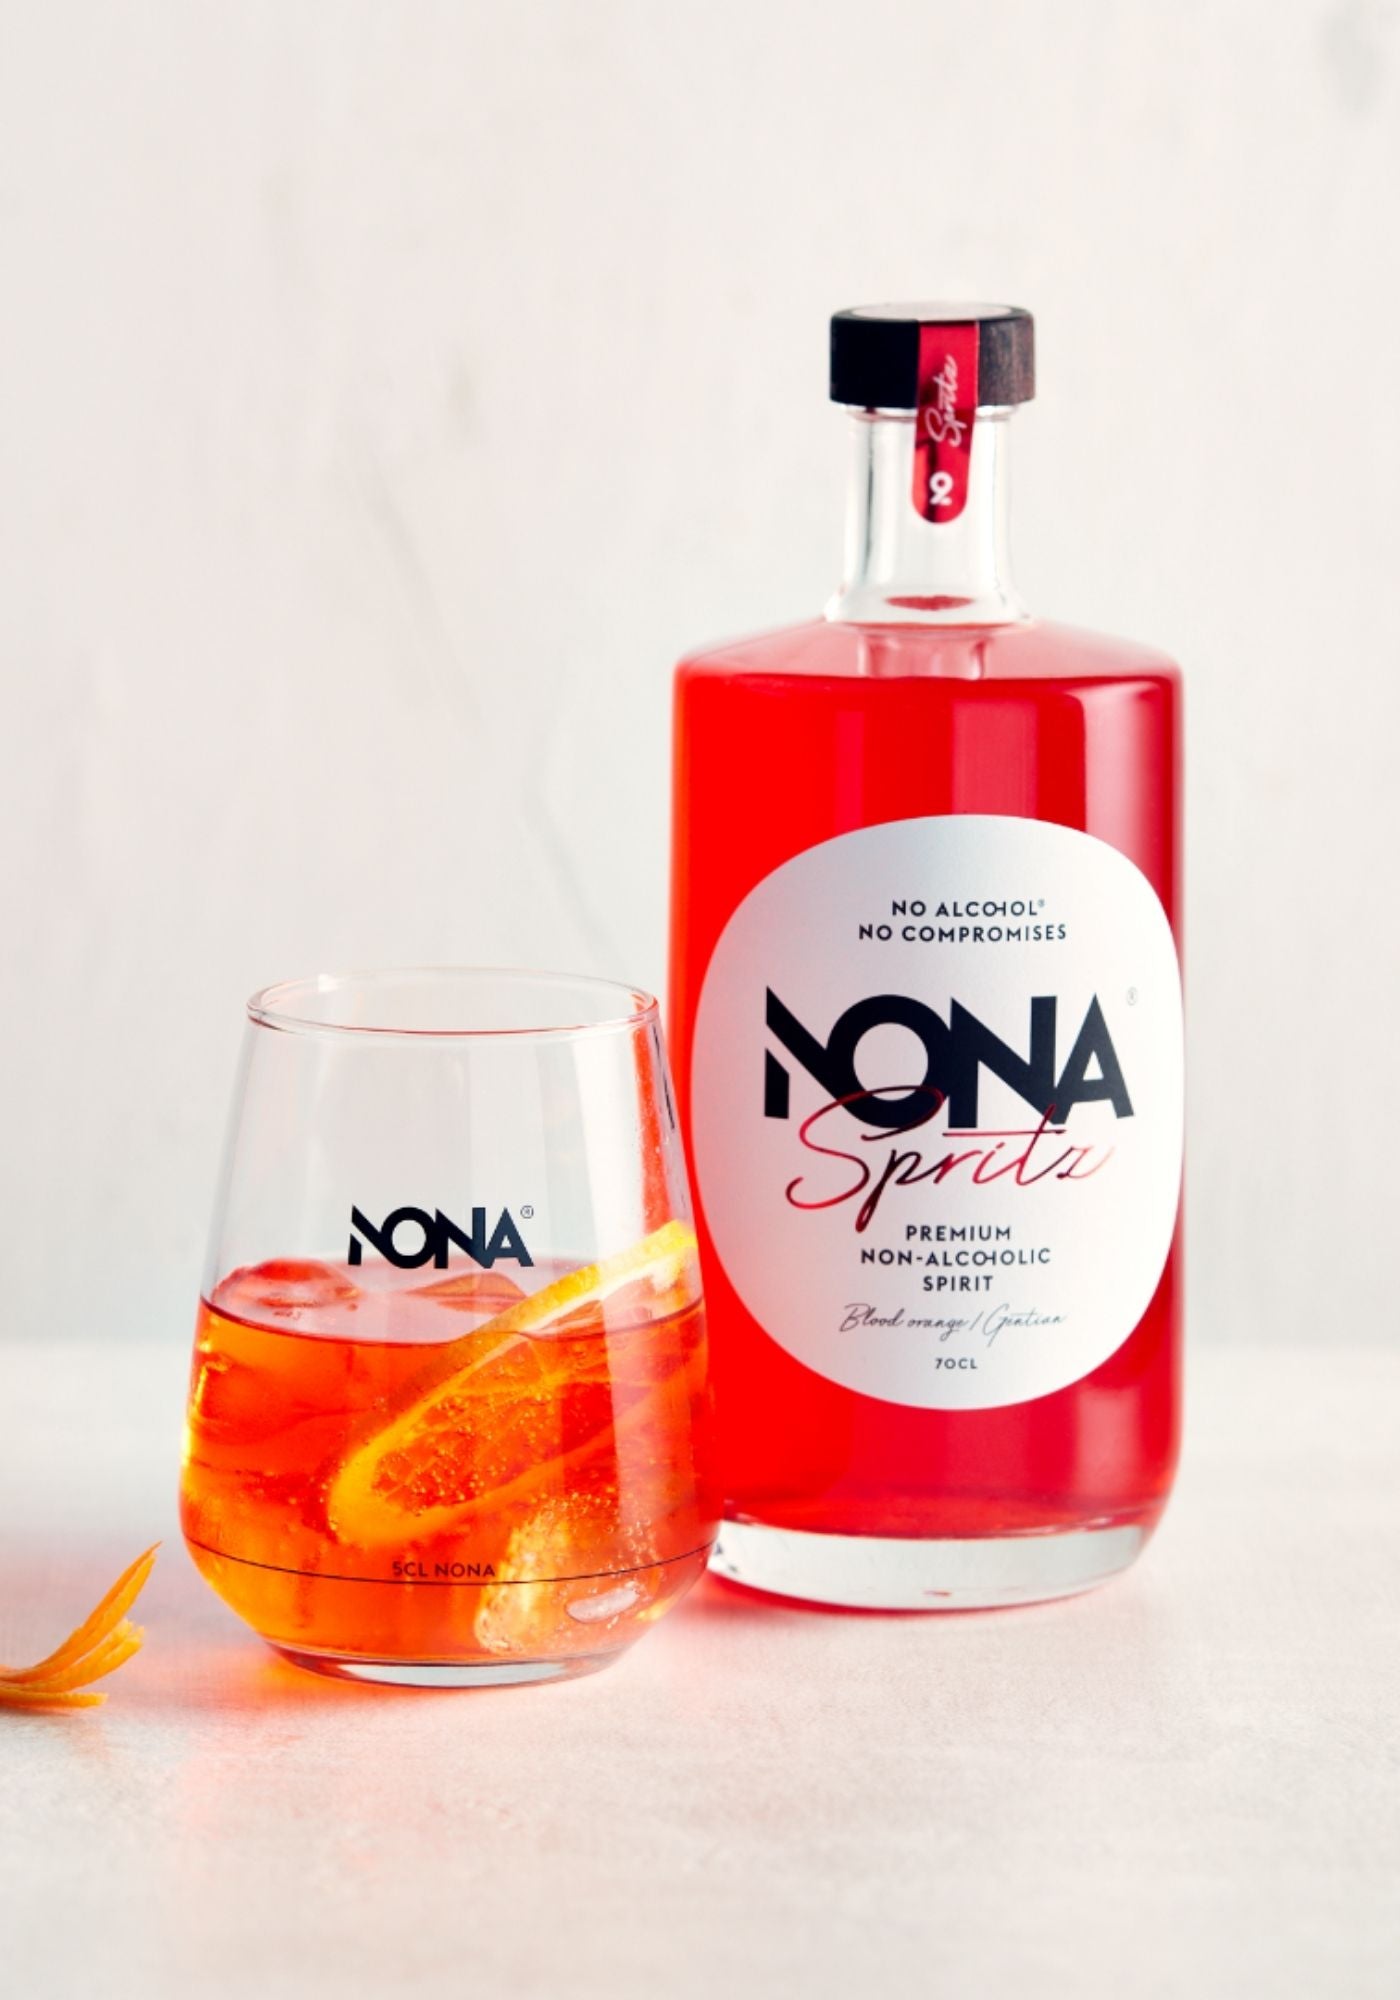 nona-spritz-bouteille-70cl-et-verre-presentation-nona-drinks